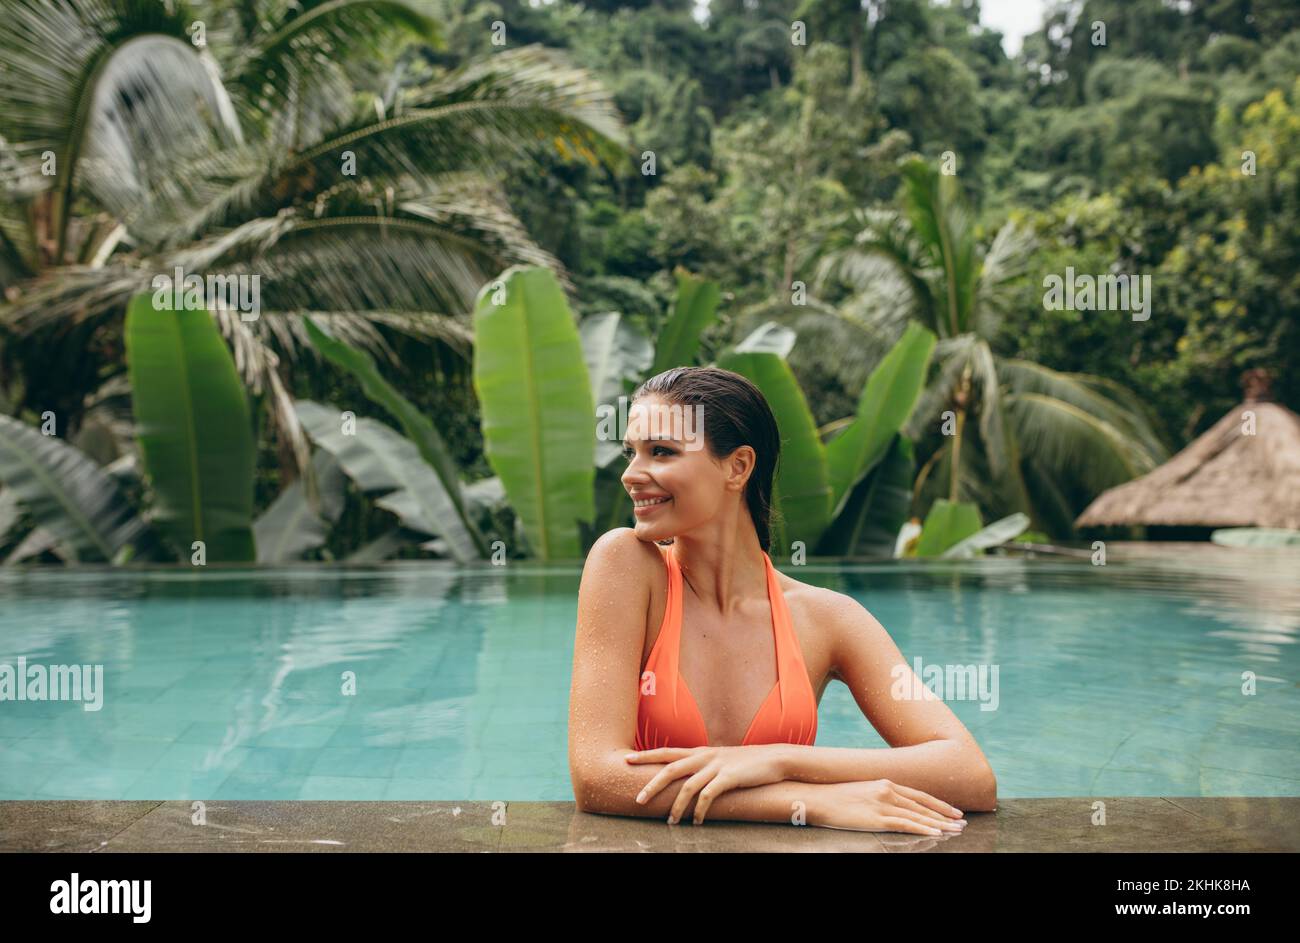 Retrato de una joven feliz que se relaja en la piscina. Mujer de pie en la piscina de un complejo turístico de lujo. Foto de stock